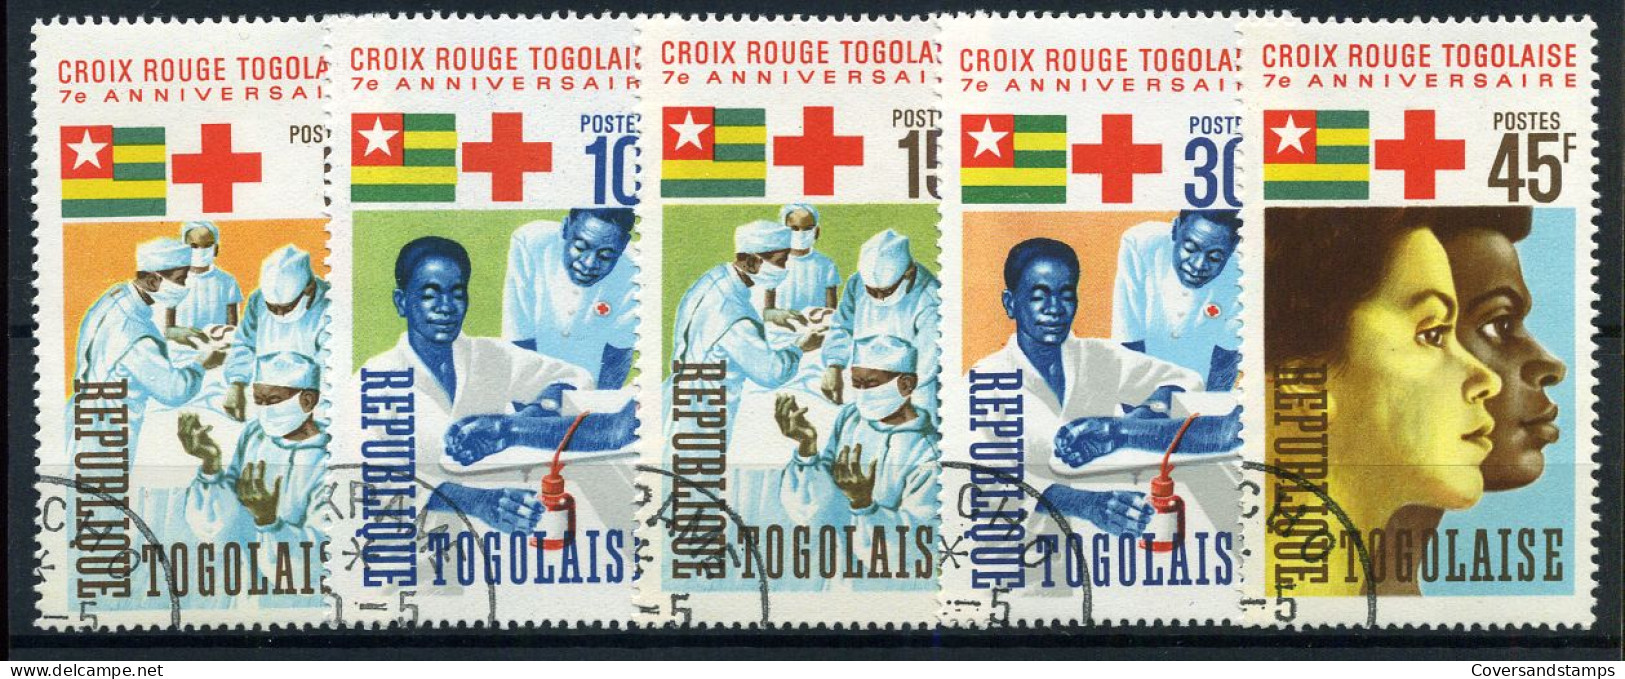 Togo - Croix Rouge - Rotes Kreuz